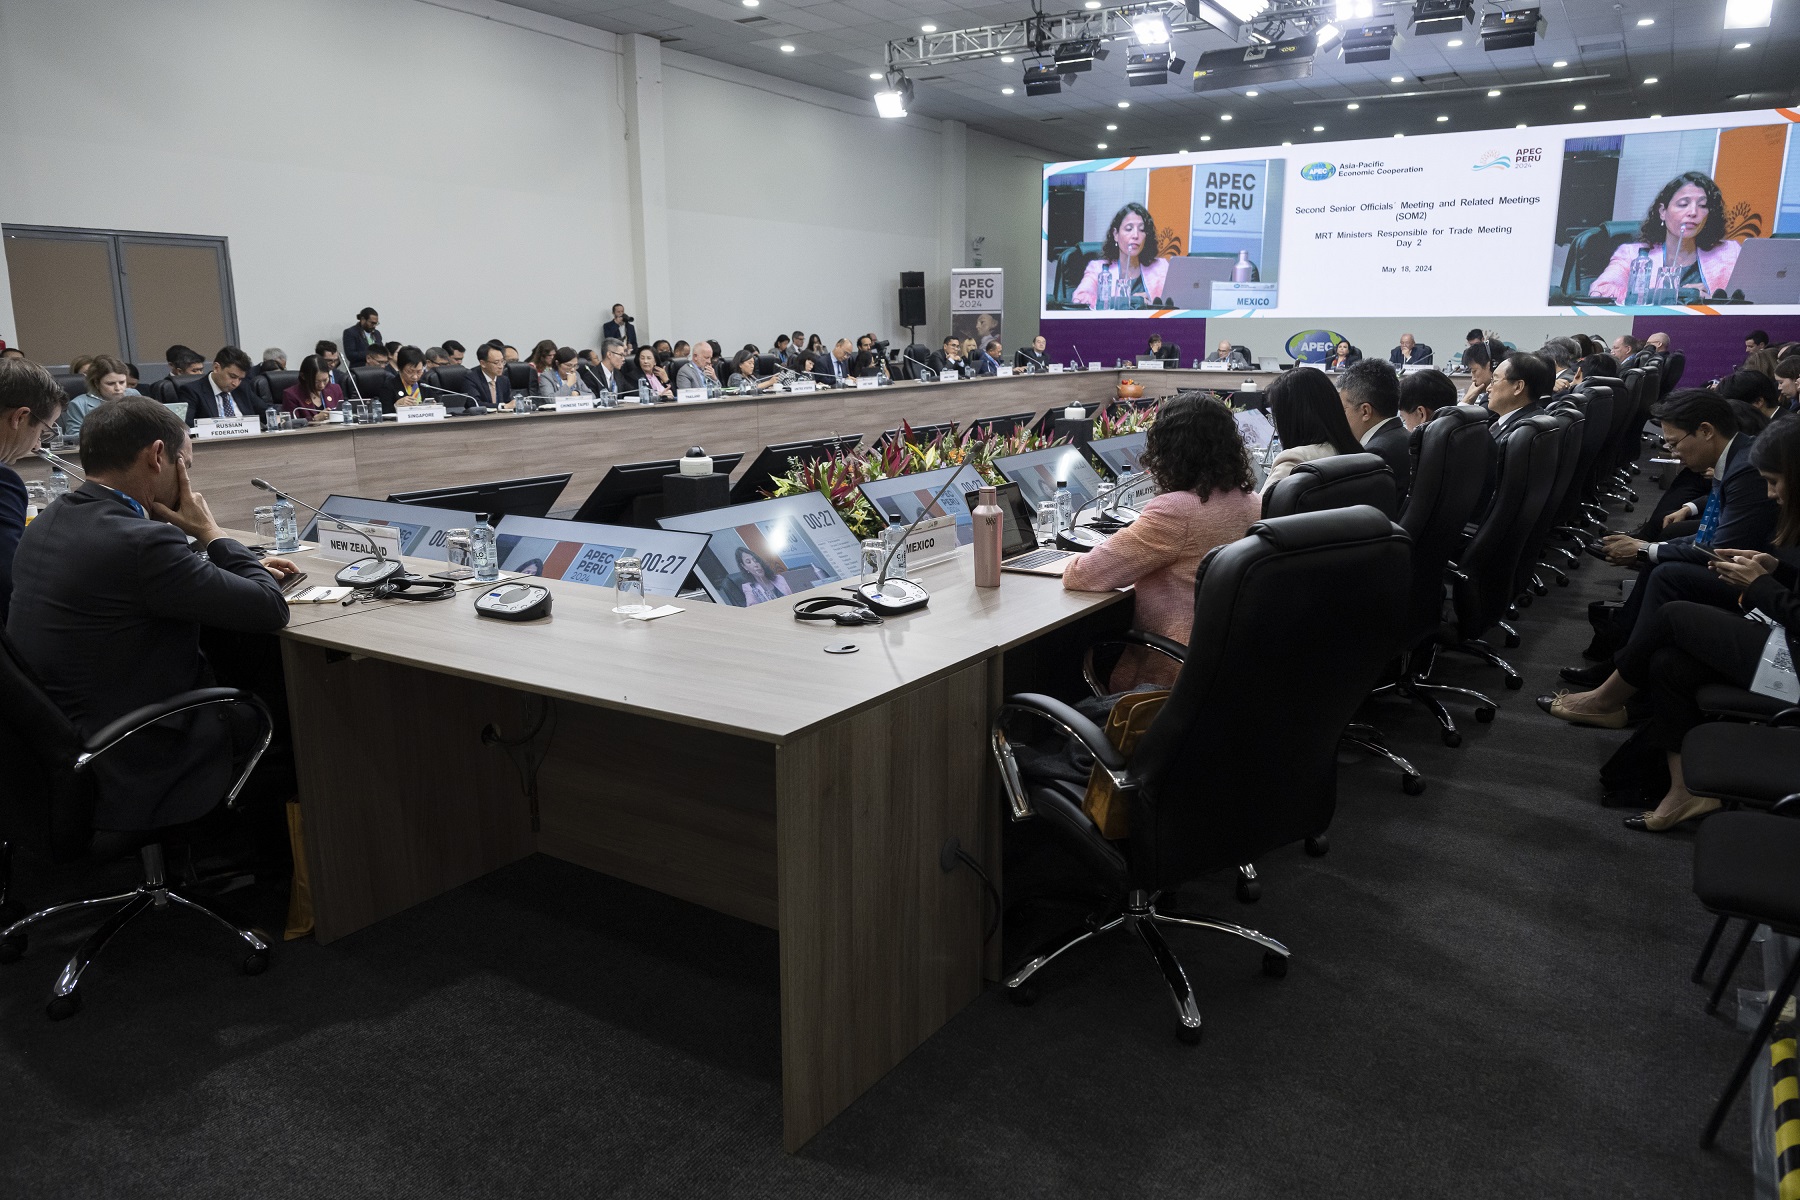 APEC y consenso en Arequipa de las reuniones ministeriales dentro de las actividades del Foro de Cooperación Económica Asia-Pacífico (APEC).